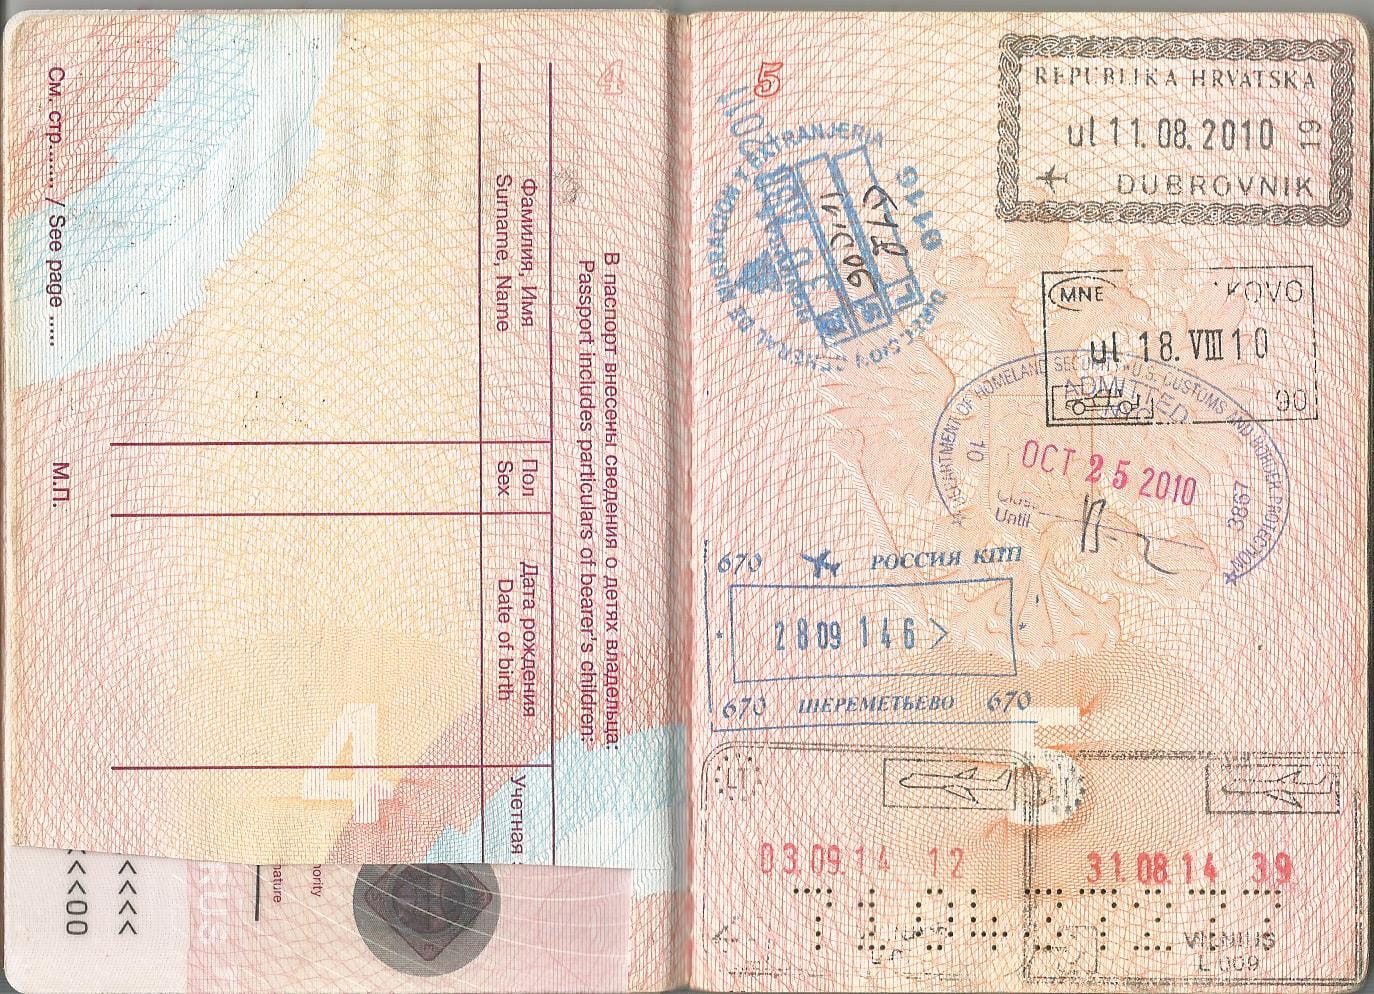 ВЦ Литвы: регистрируемся, забираем паспорт (всё, кроме виз) - Форум slep-kostroma.ru